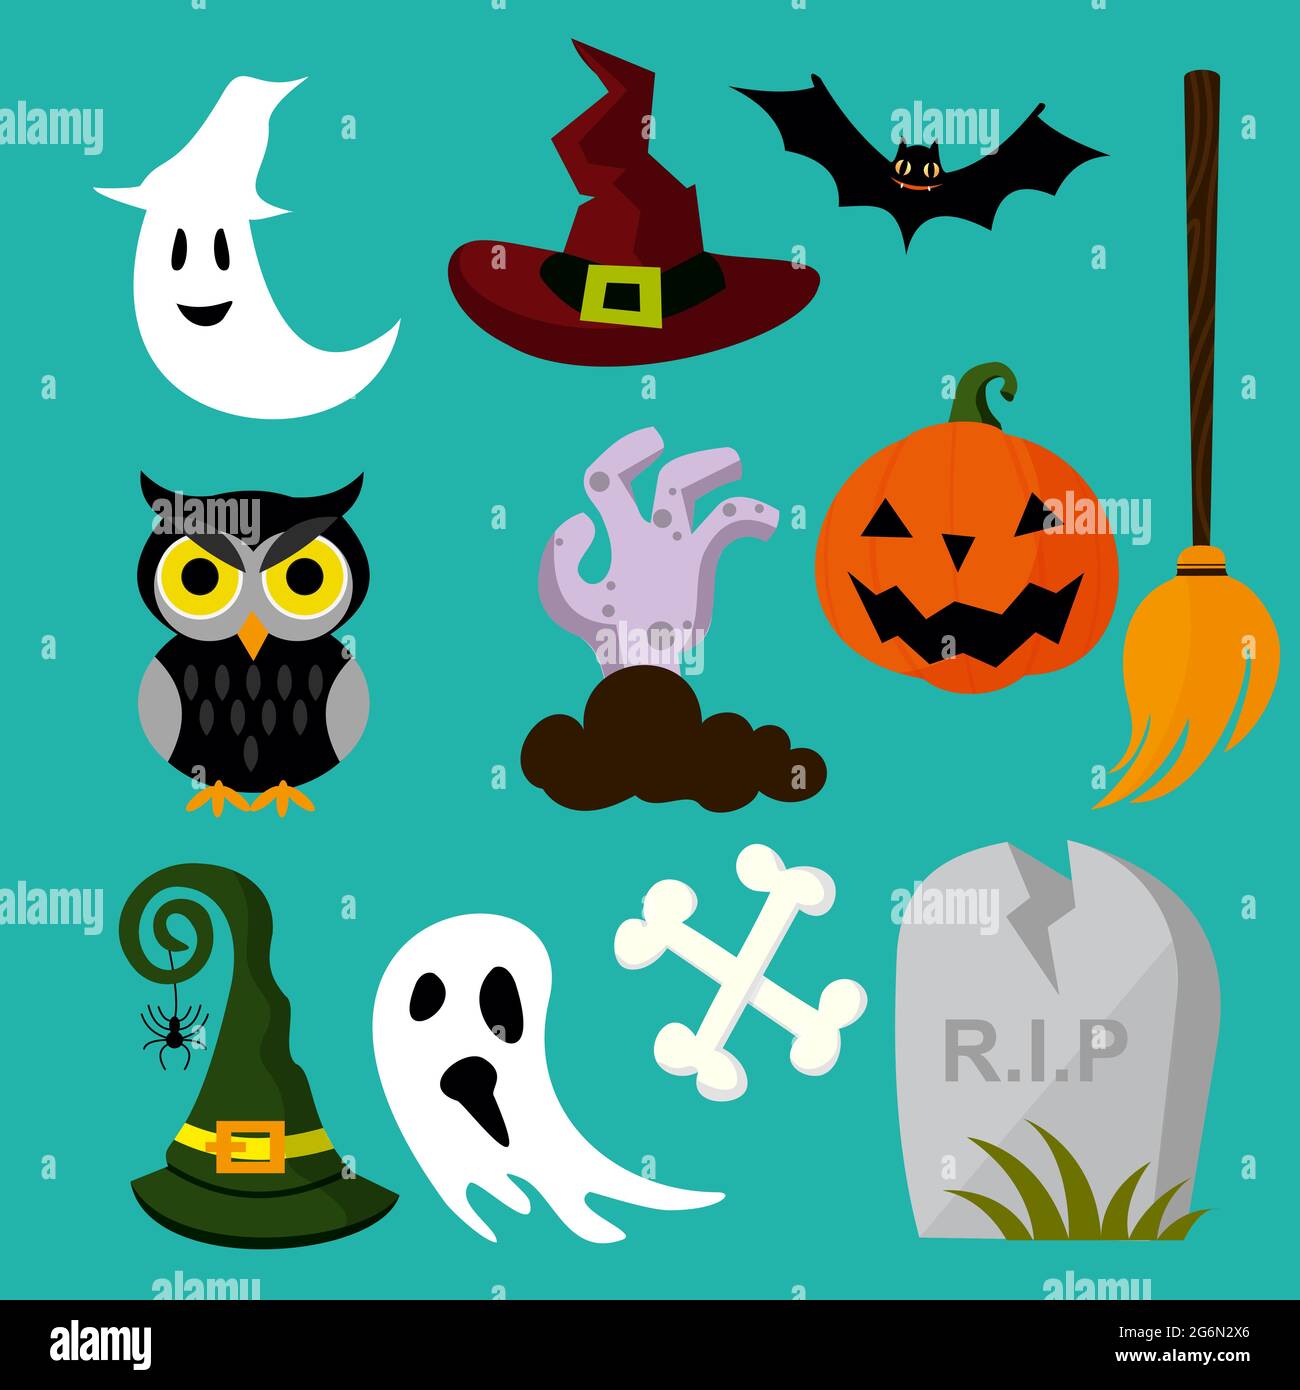 Illustration vectorielle d'un hibou d'Halloween, chapeau, tombe, balai, fantôme. Collection d'affiches et d'icônes pour Halloween. Concept de dessin animé de style plat. Illustration de Vecteur